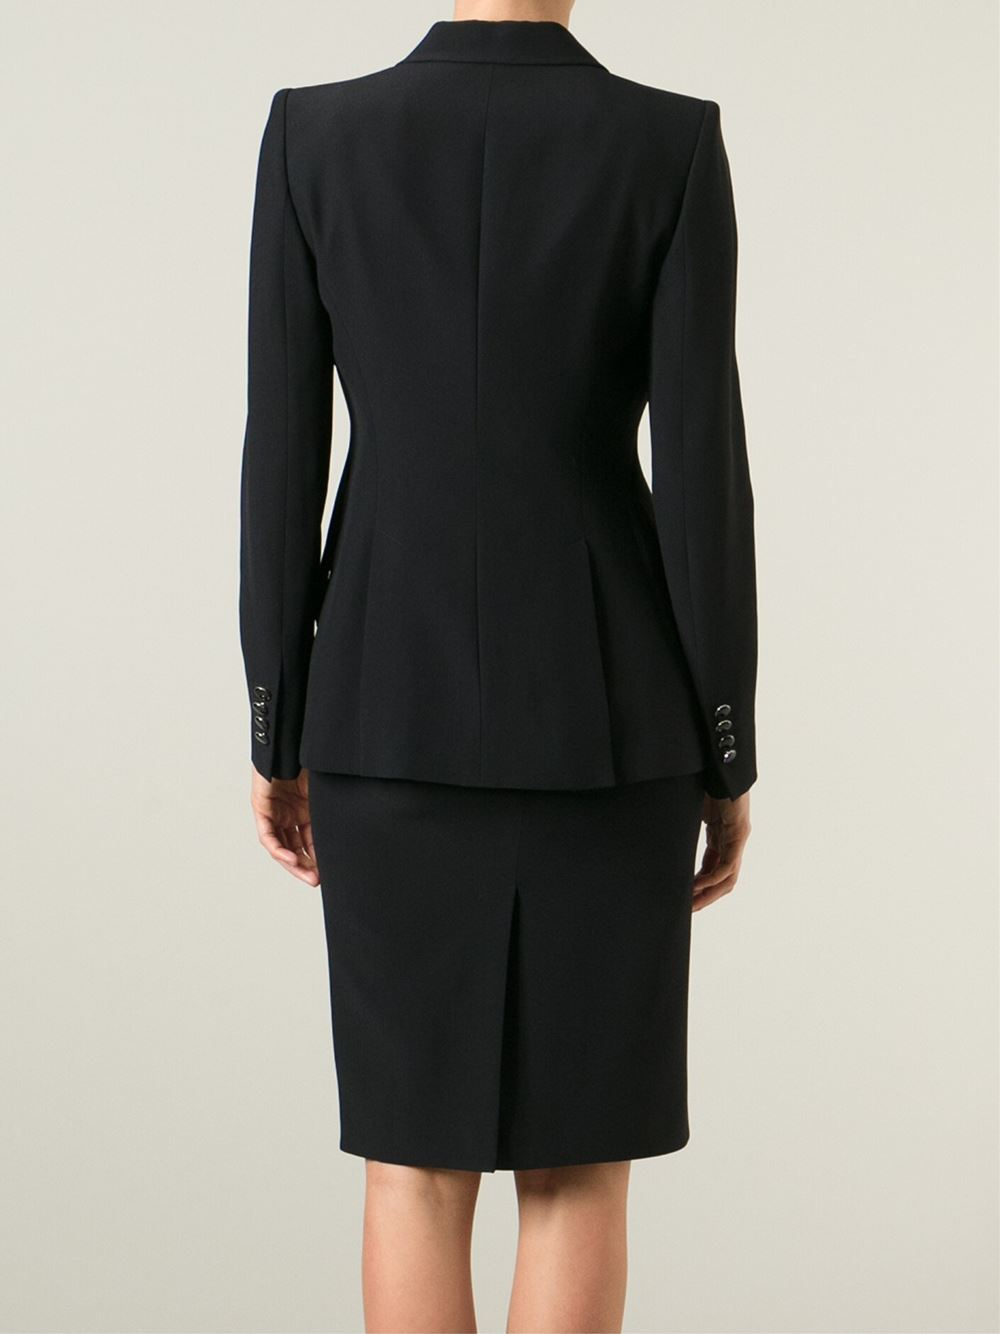 Women S Black Skirt Suit 106